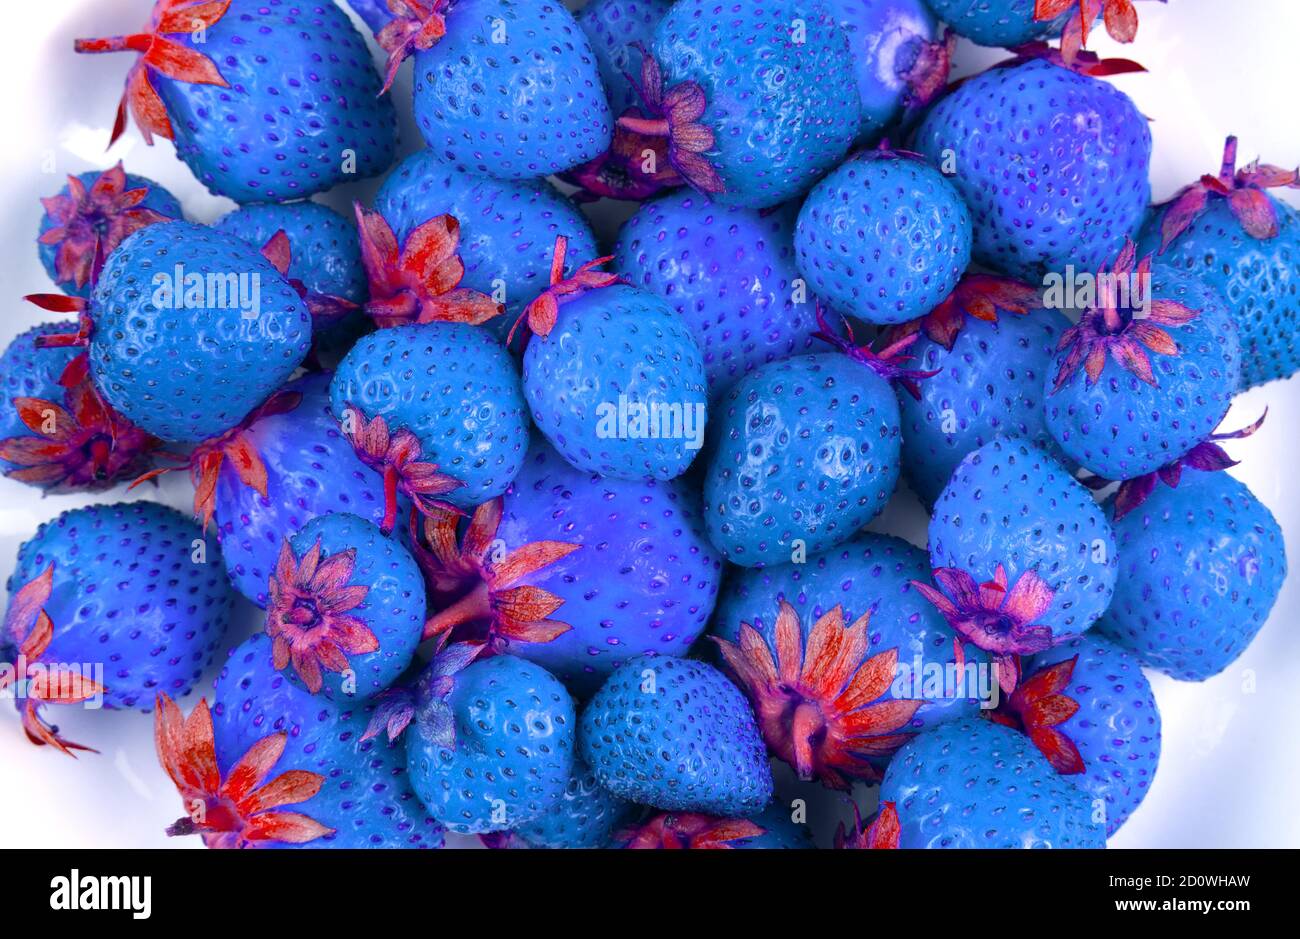 Abstrakt blaue Erdbeere, symbolisiert umweltuntaugliche Produkte enthalten, Gifte, Salpeter. Stockfoto